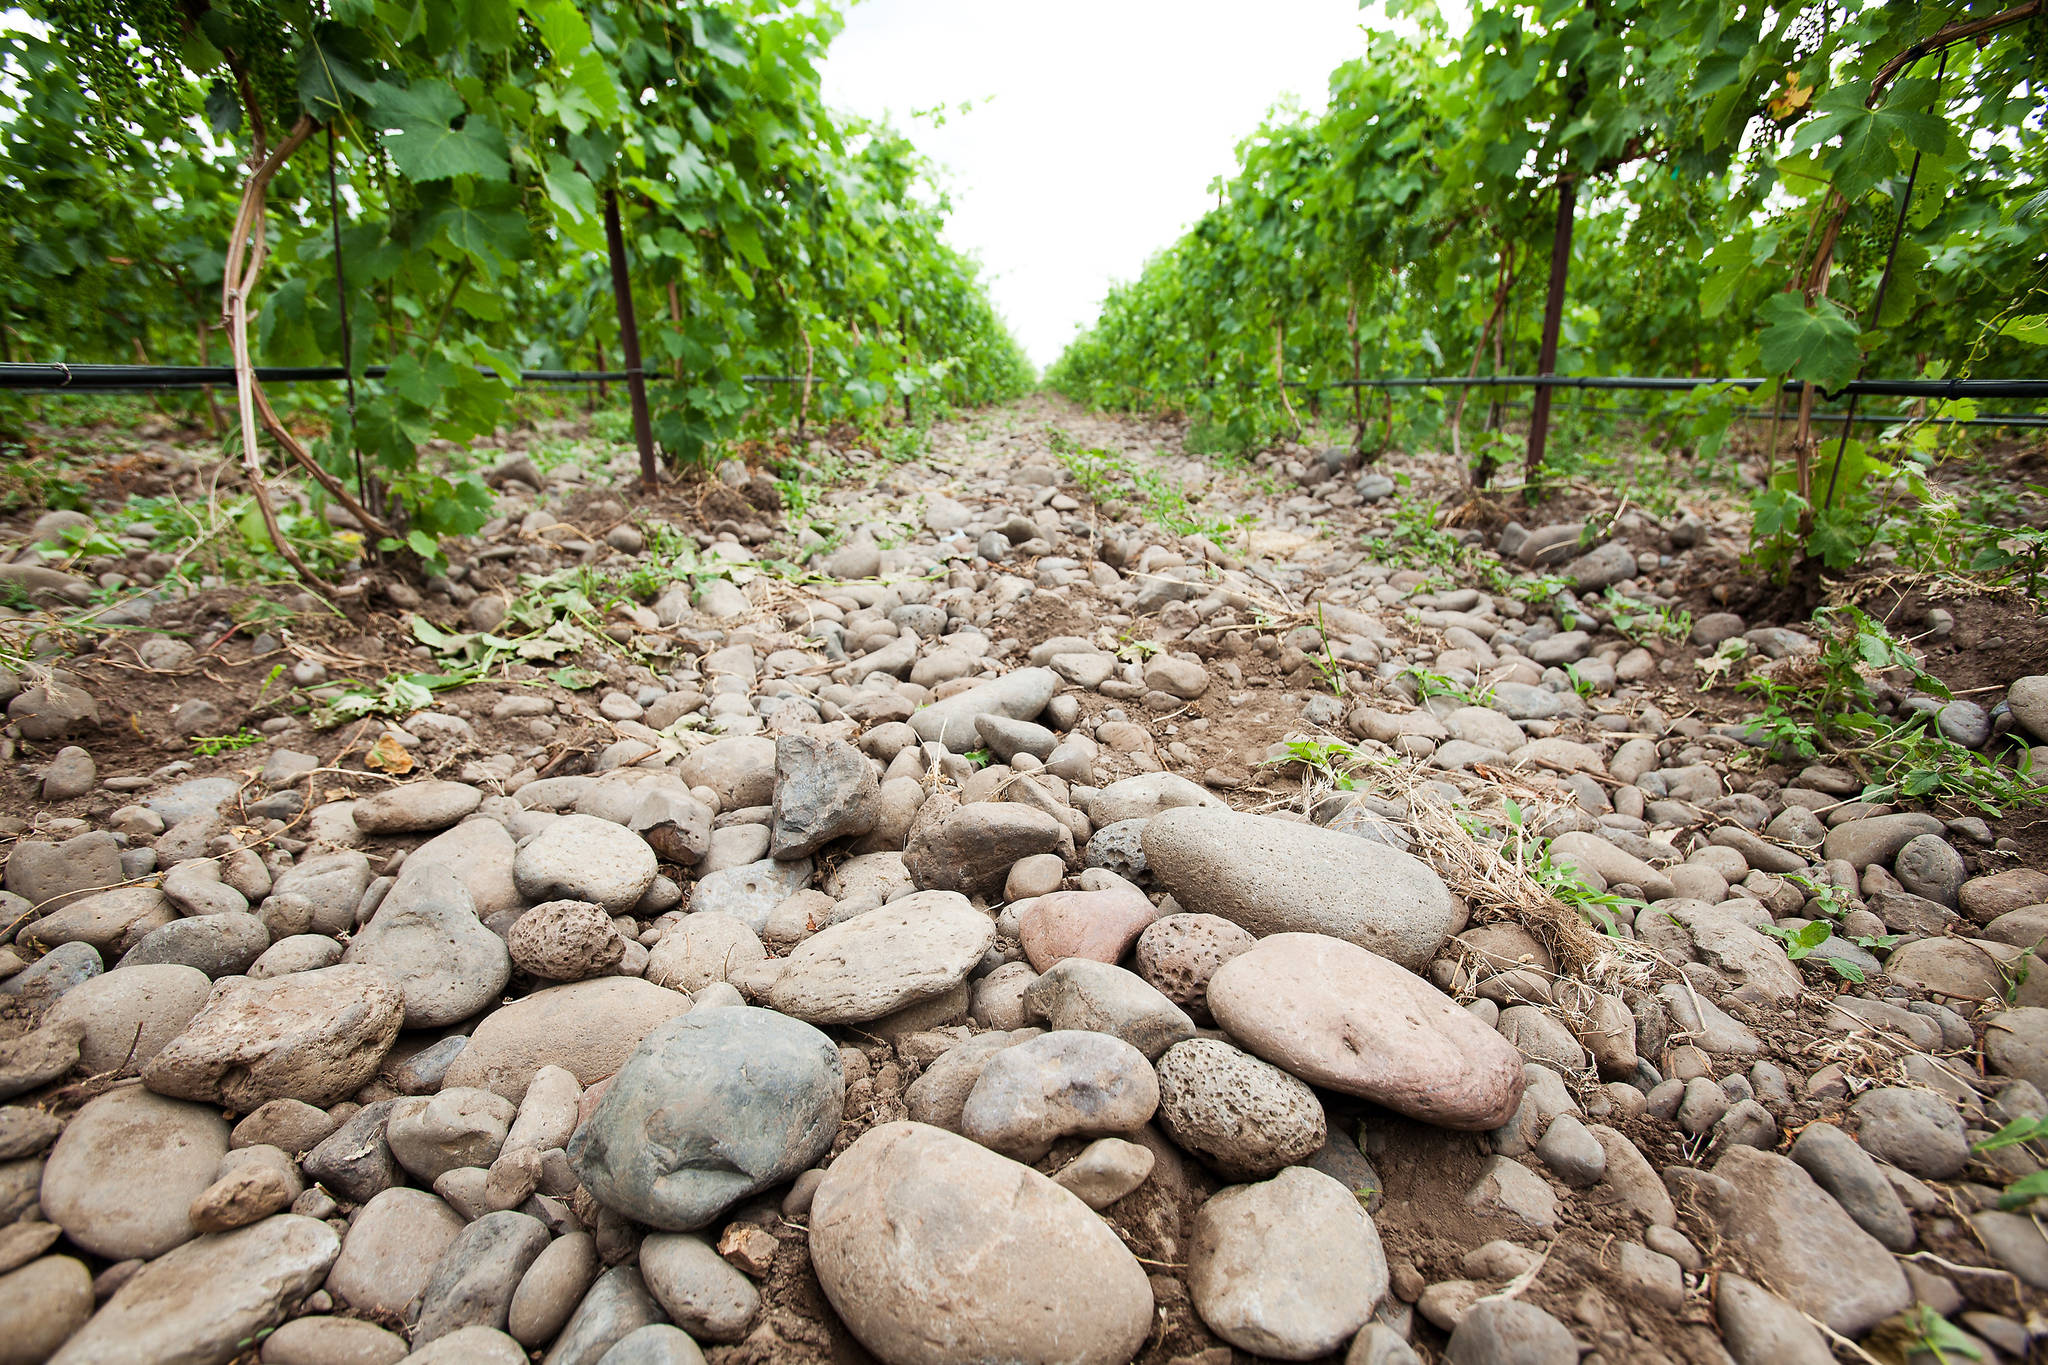 Stoney Vine Vineyard in the Rocks. Photo by Joe Tierney